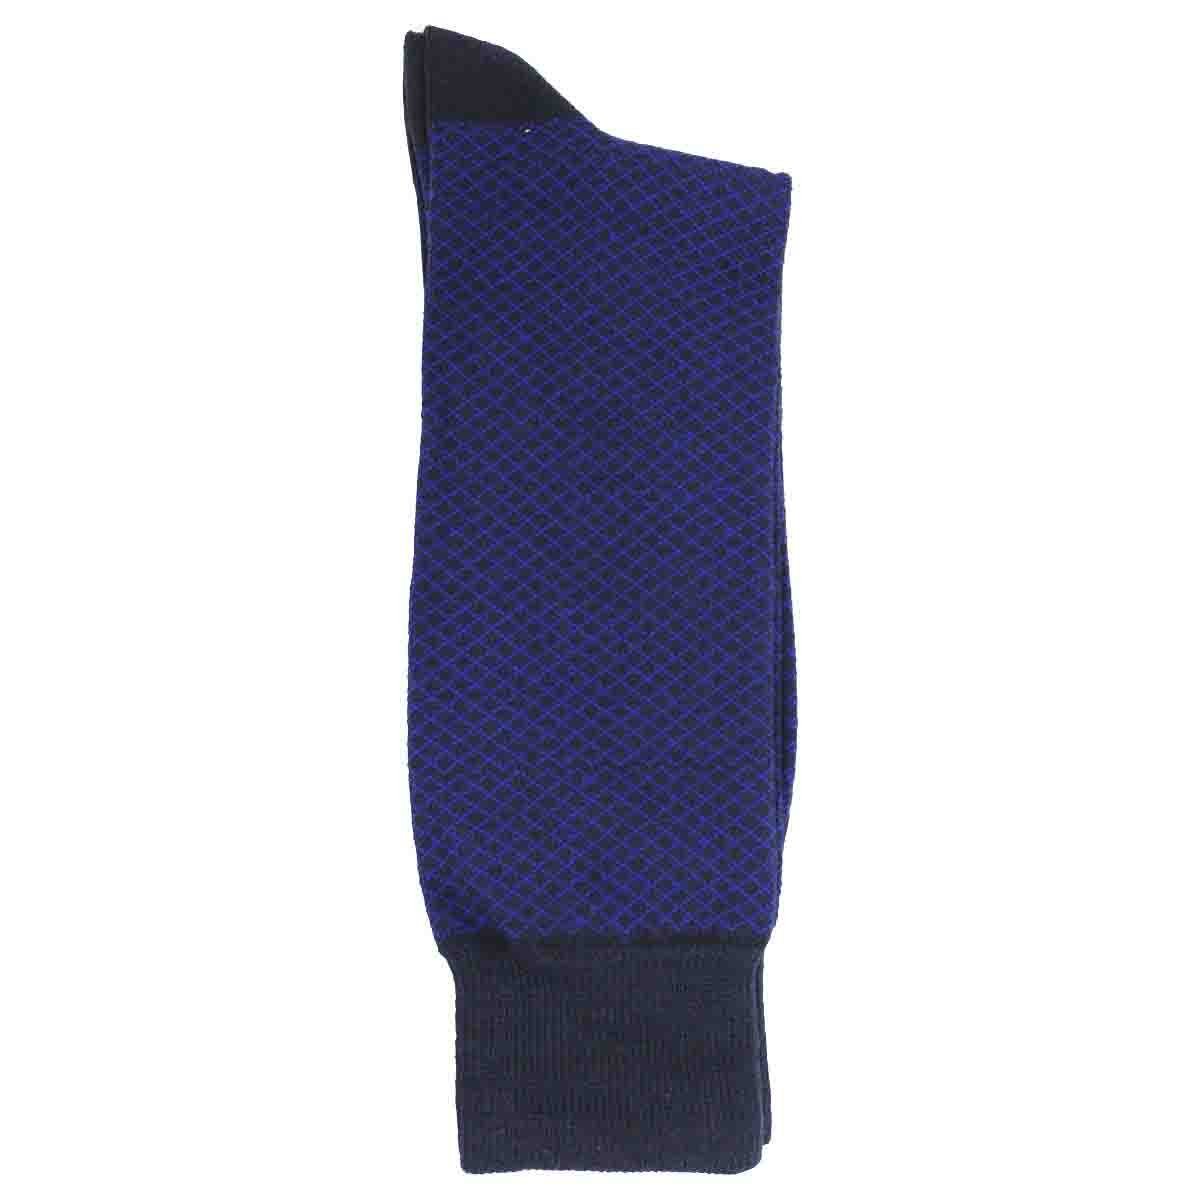 Calcetin de Vestir para Caballero Azul Pierre Cardin